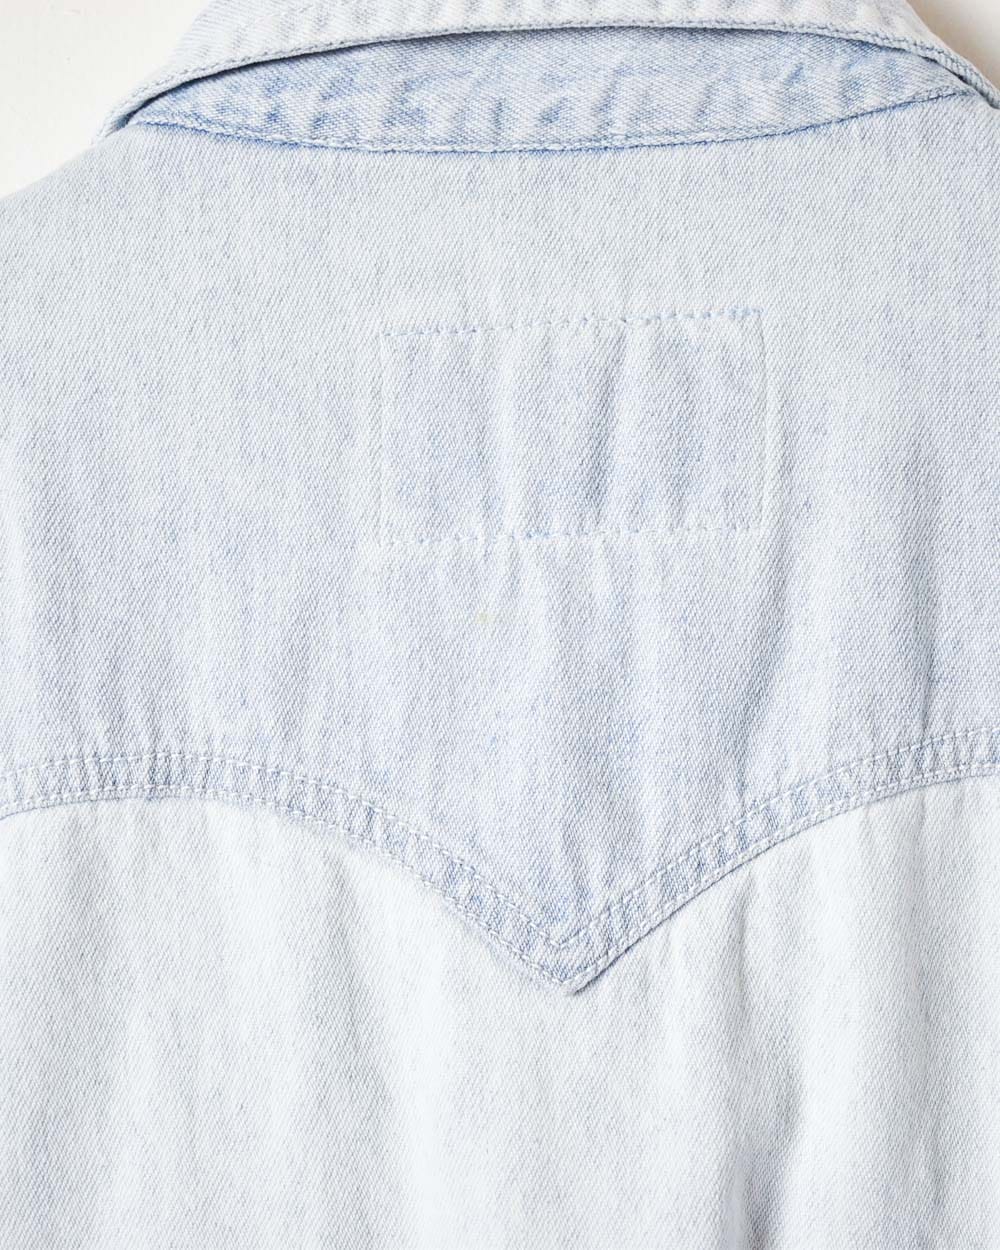 BabyBlue Levi's 80s Denim Shirt - Medium